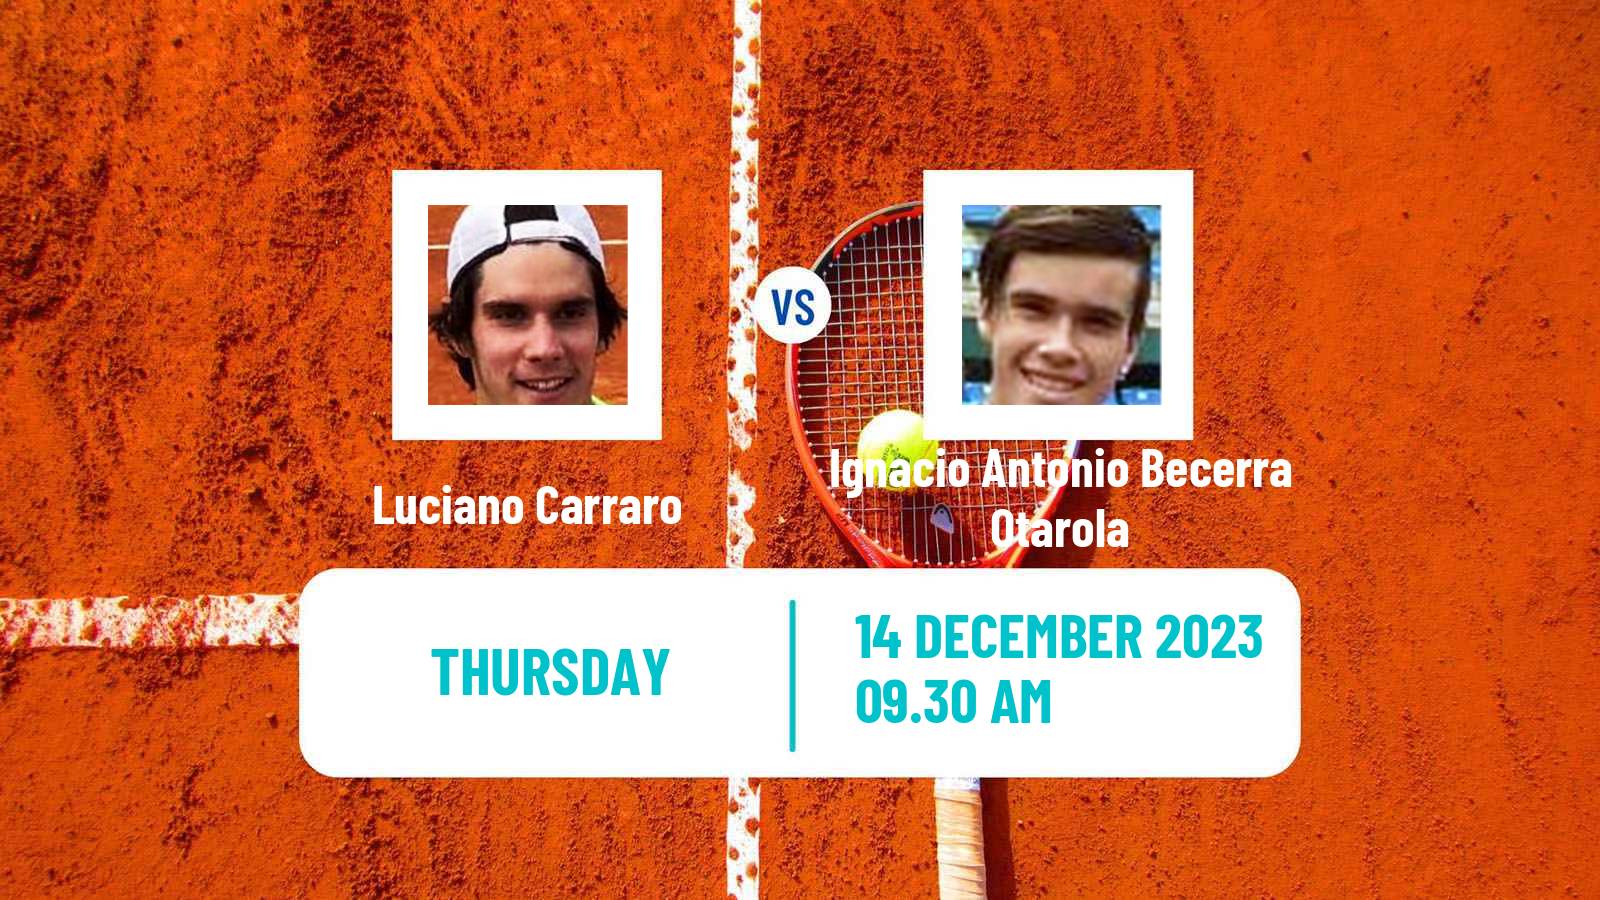 Tennis ITF M15 Concepcion 2 Men Luciano Carraro - Ignacio Antonio Becerra Otarola